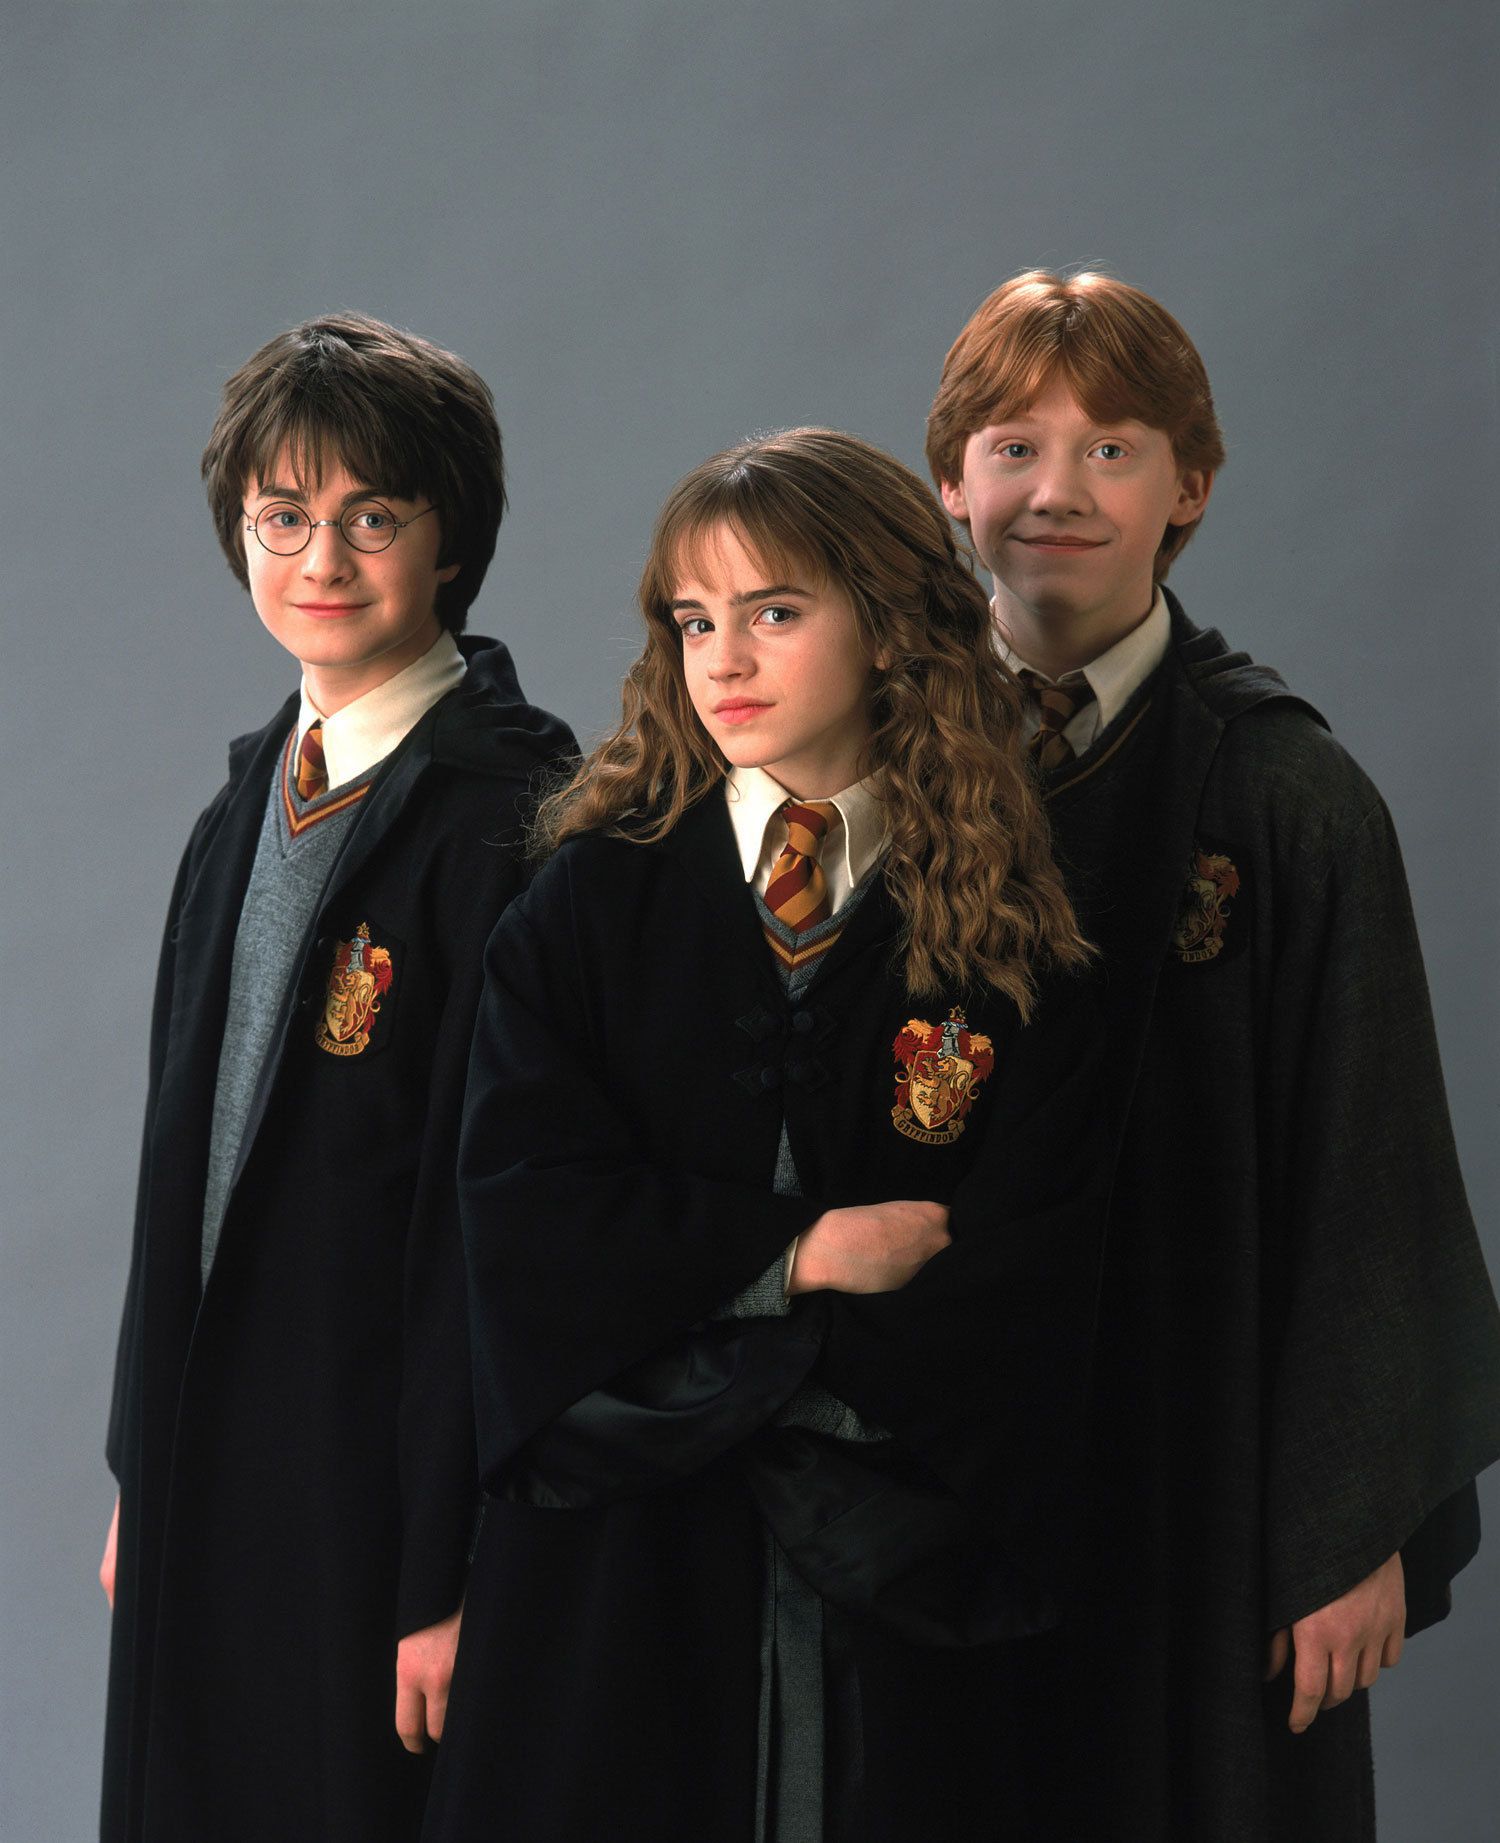 Résultat de recherche d'images pour "harry ron hermione"